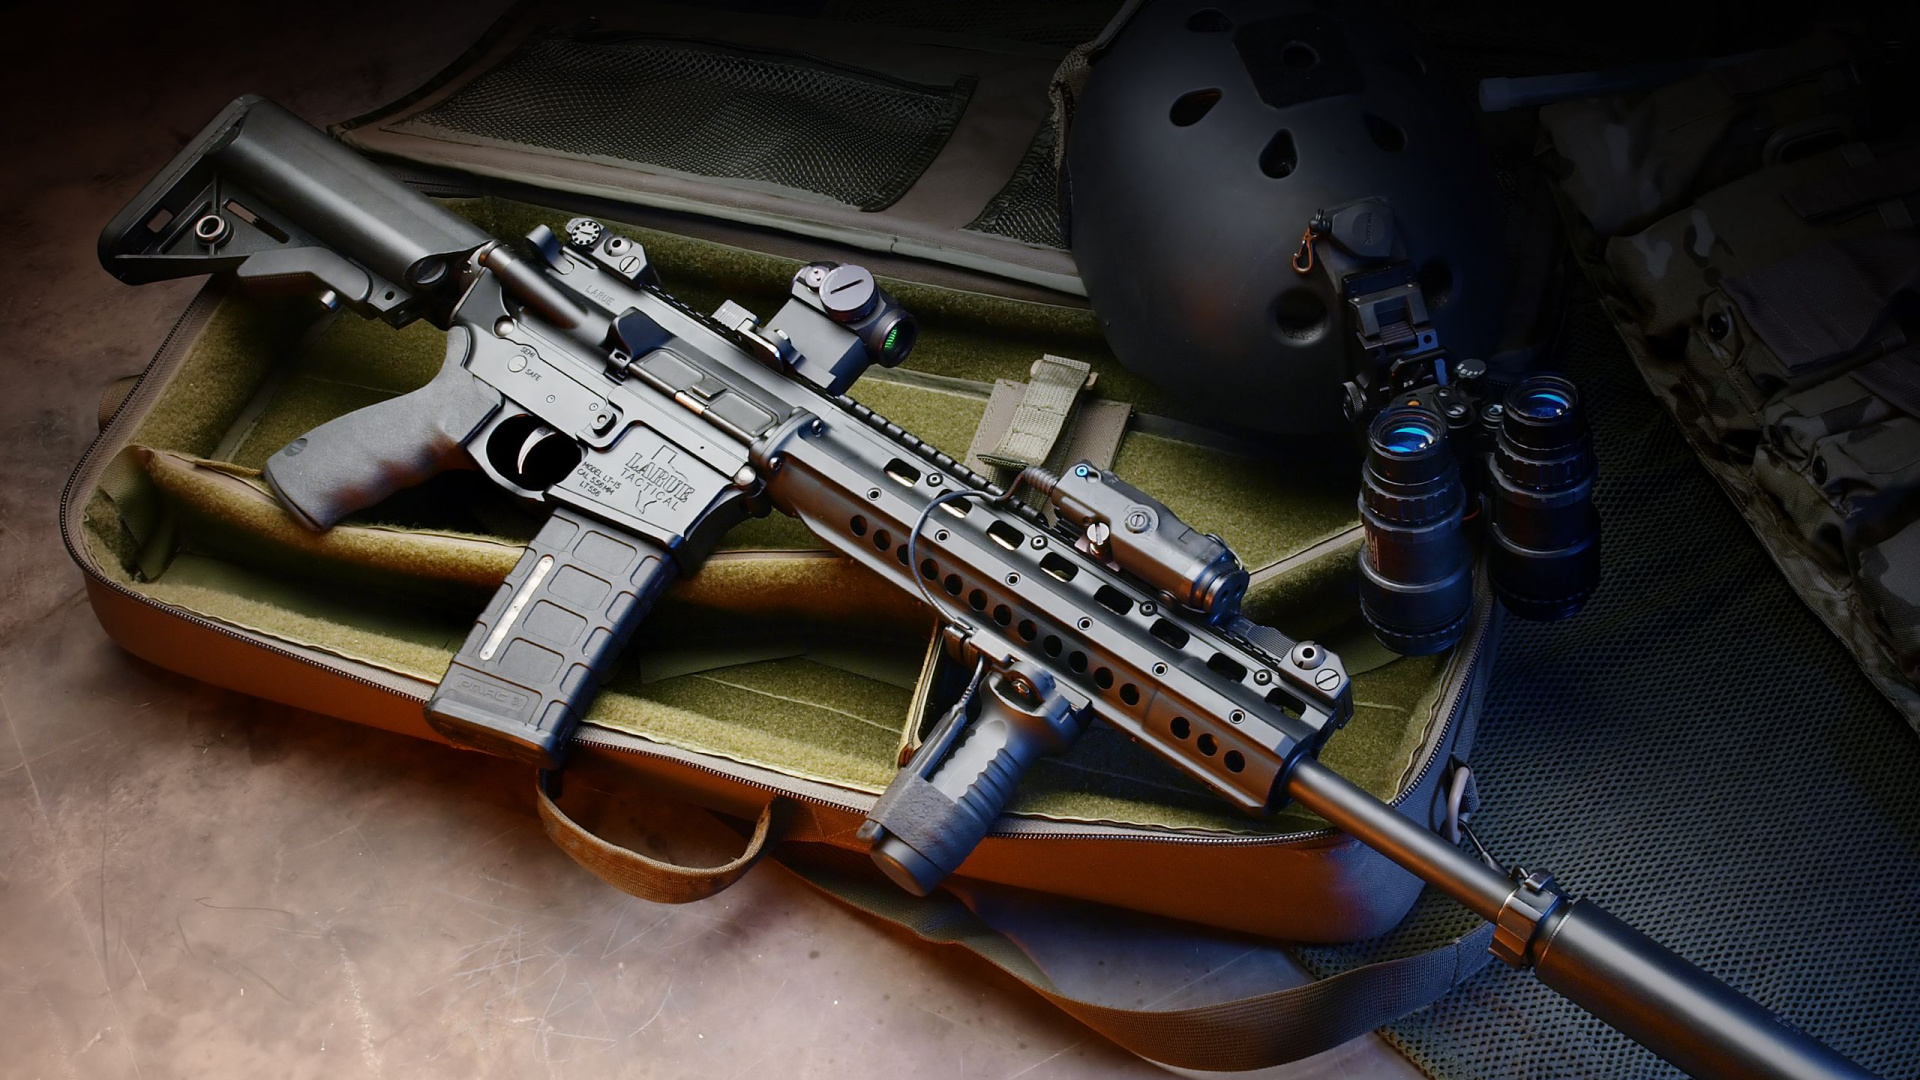 M4卡宾枪, 卡宾枪, 枪, 枪支, 触发器 壁纸 1920x1080 允许